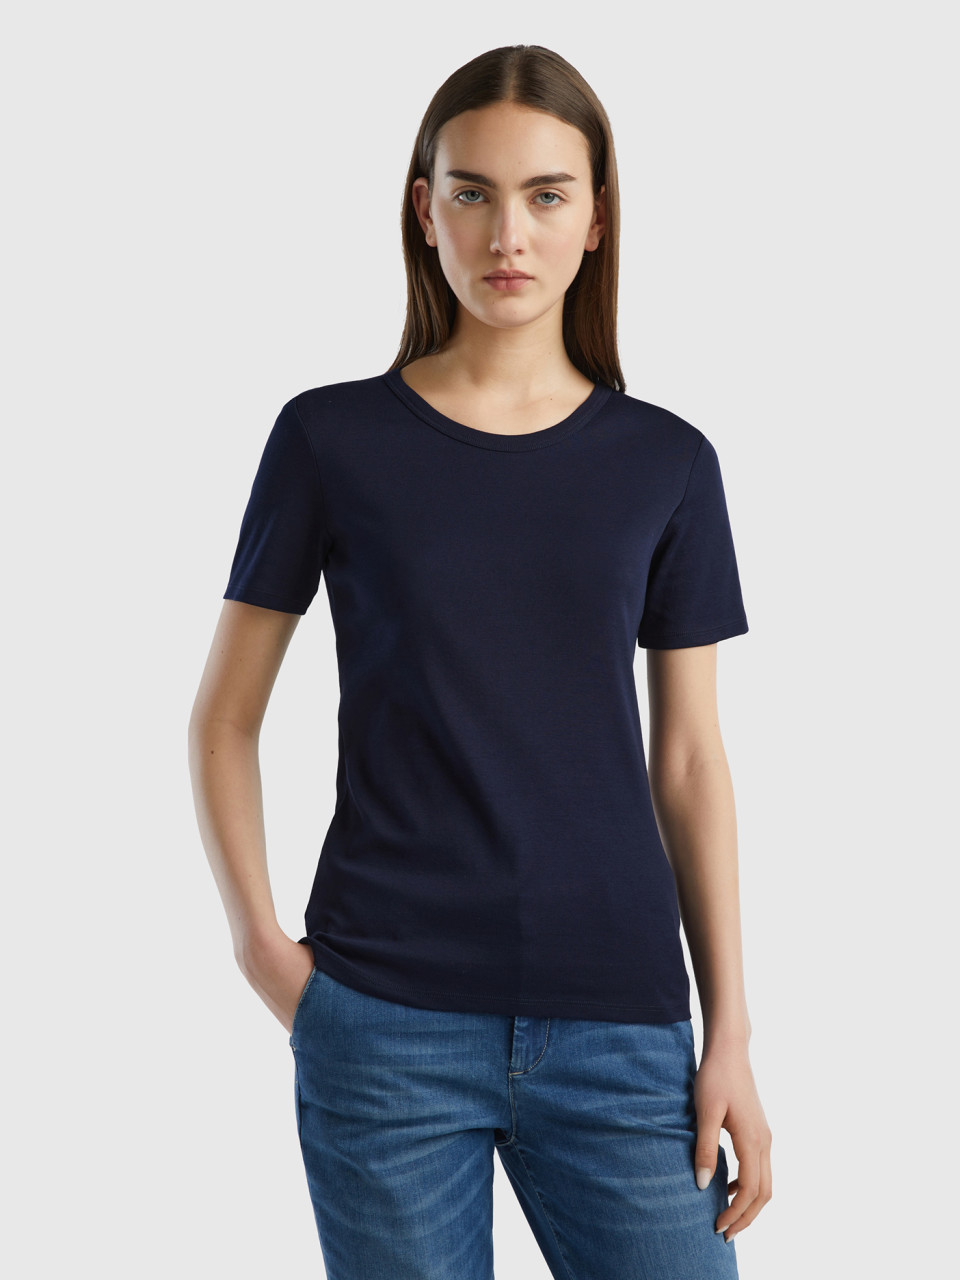 Benetton, Camiseta De Algodón De Fibra Larga, Azul Oscuro, Mujer